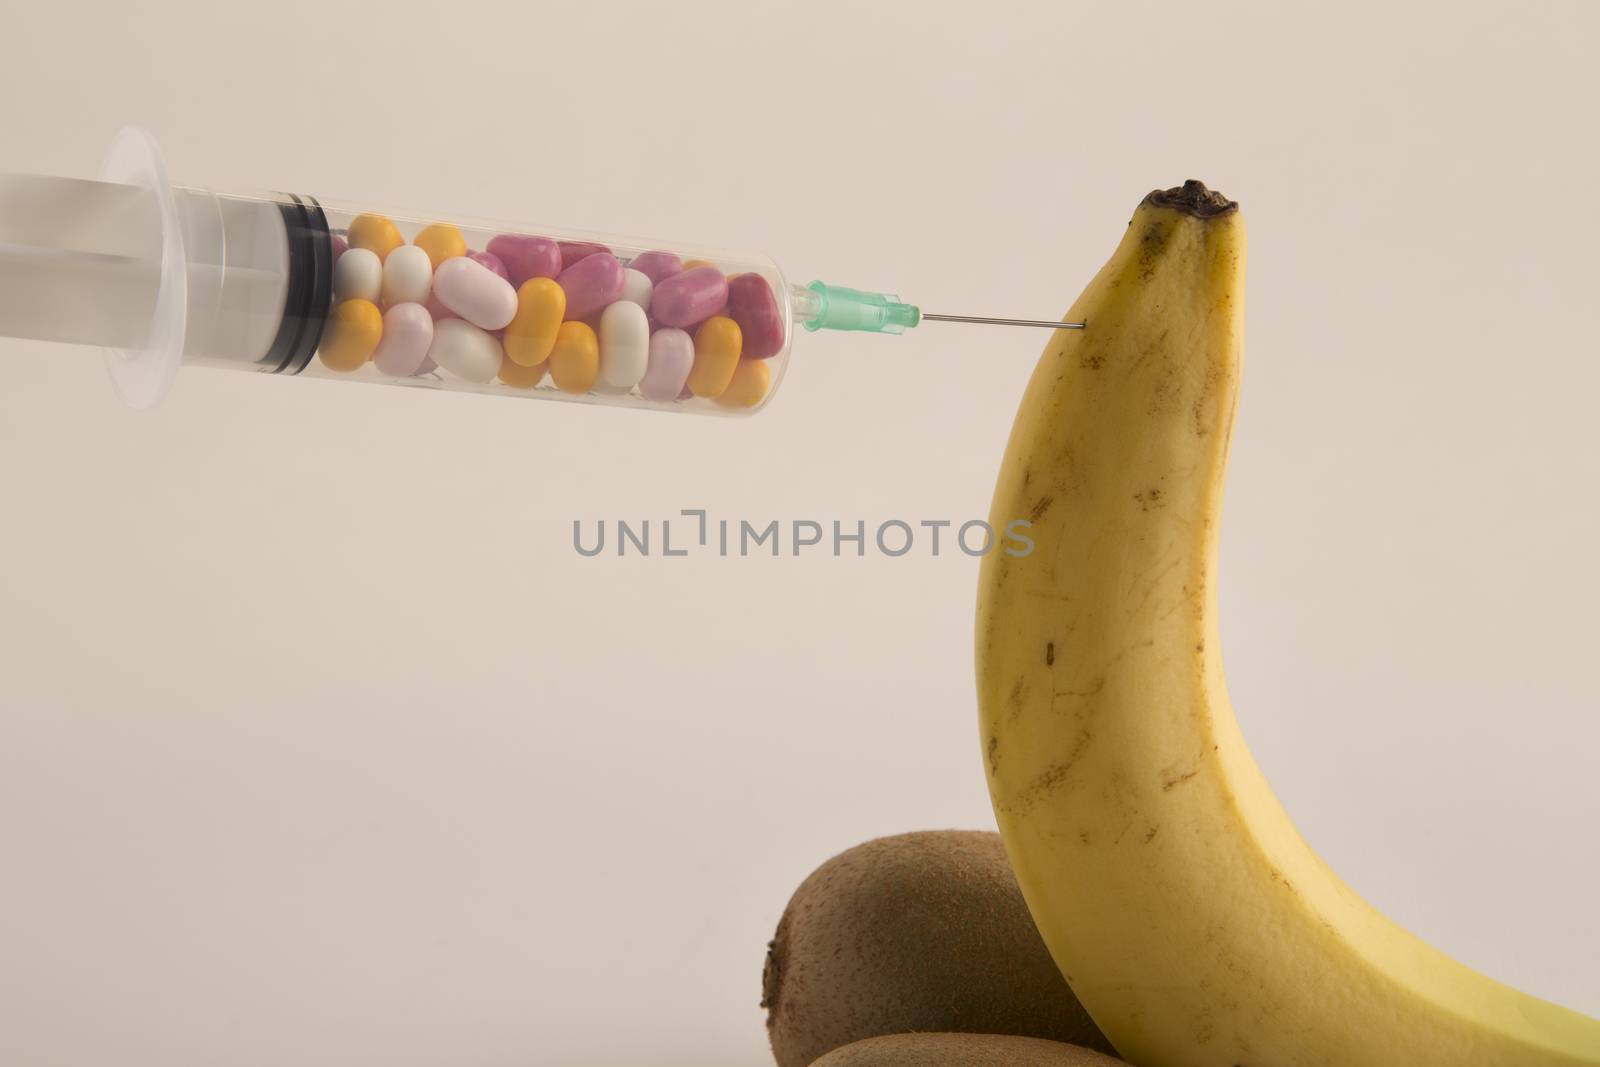 Male impotence metaphor: banana,kiwi and syringe with pills